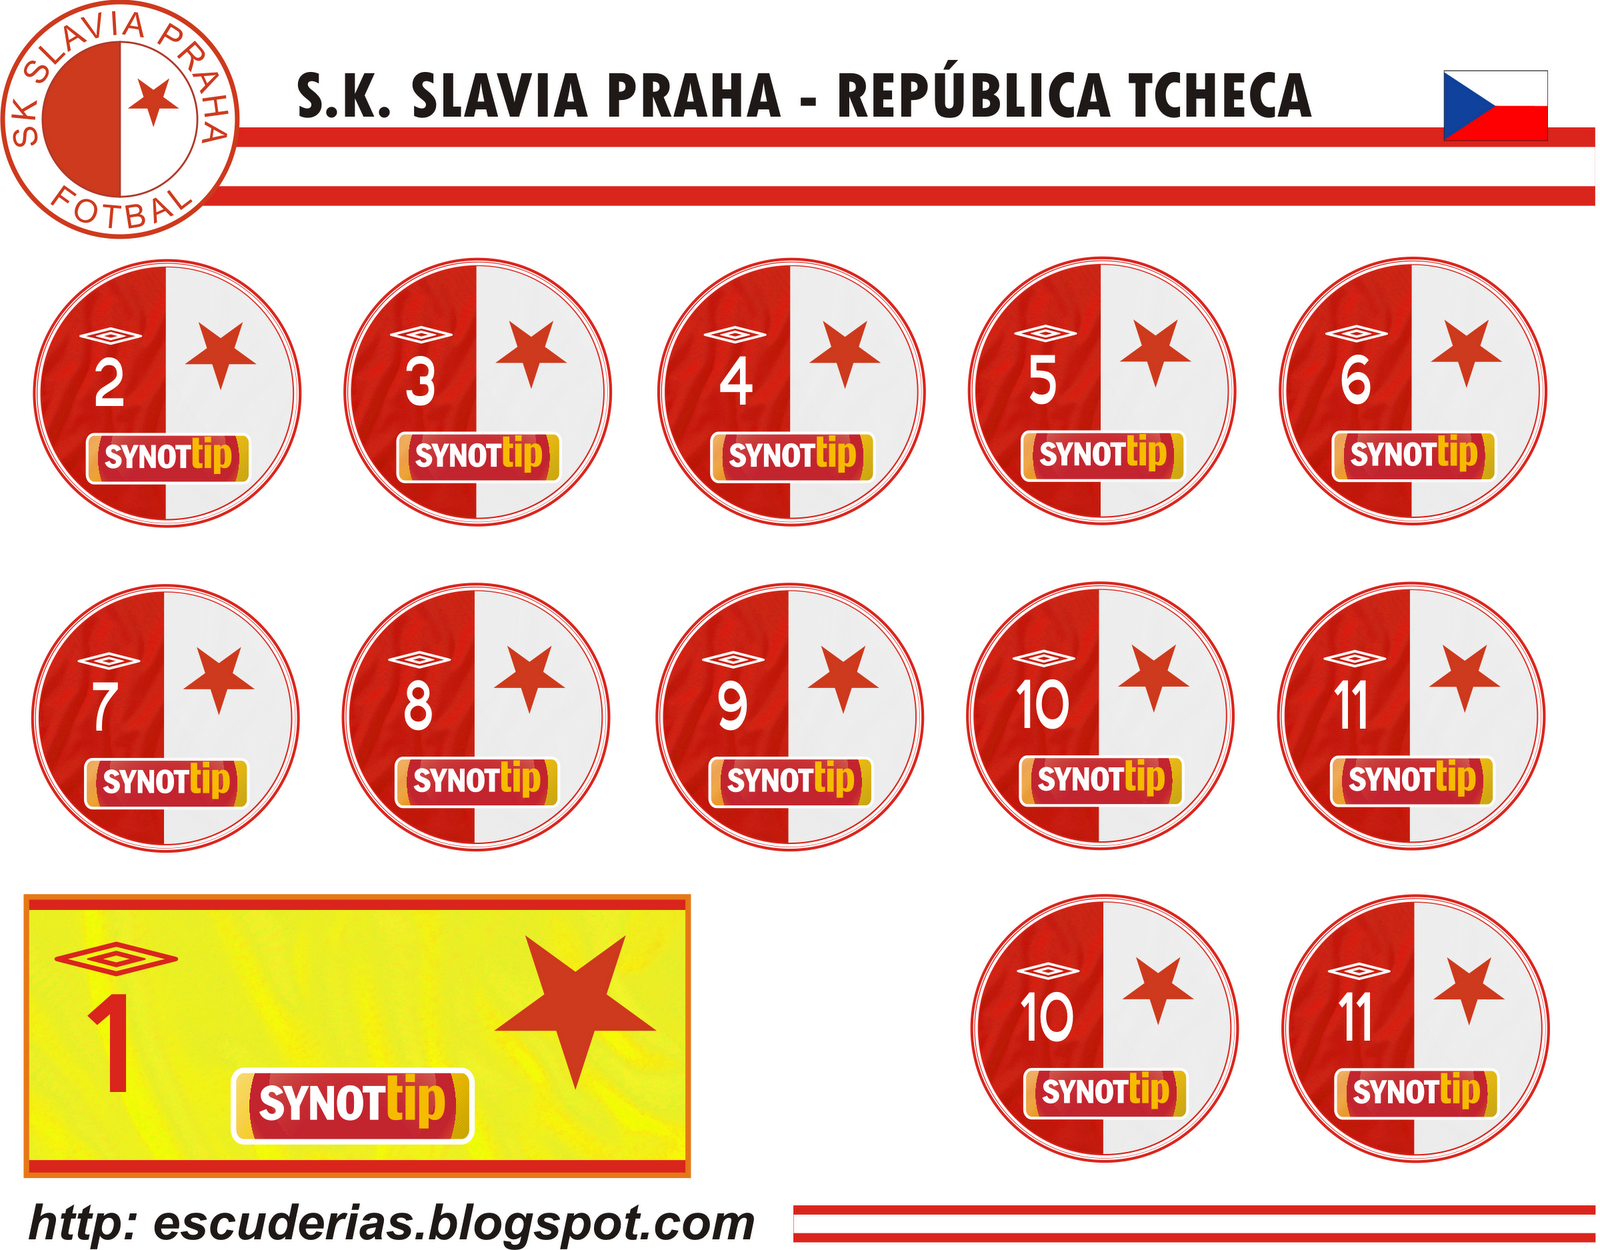 Slavia Praha (Feminino) :: Rep. Tcheca :: Perfil da Equipe 